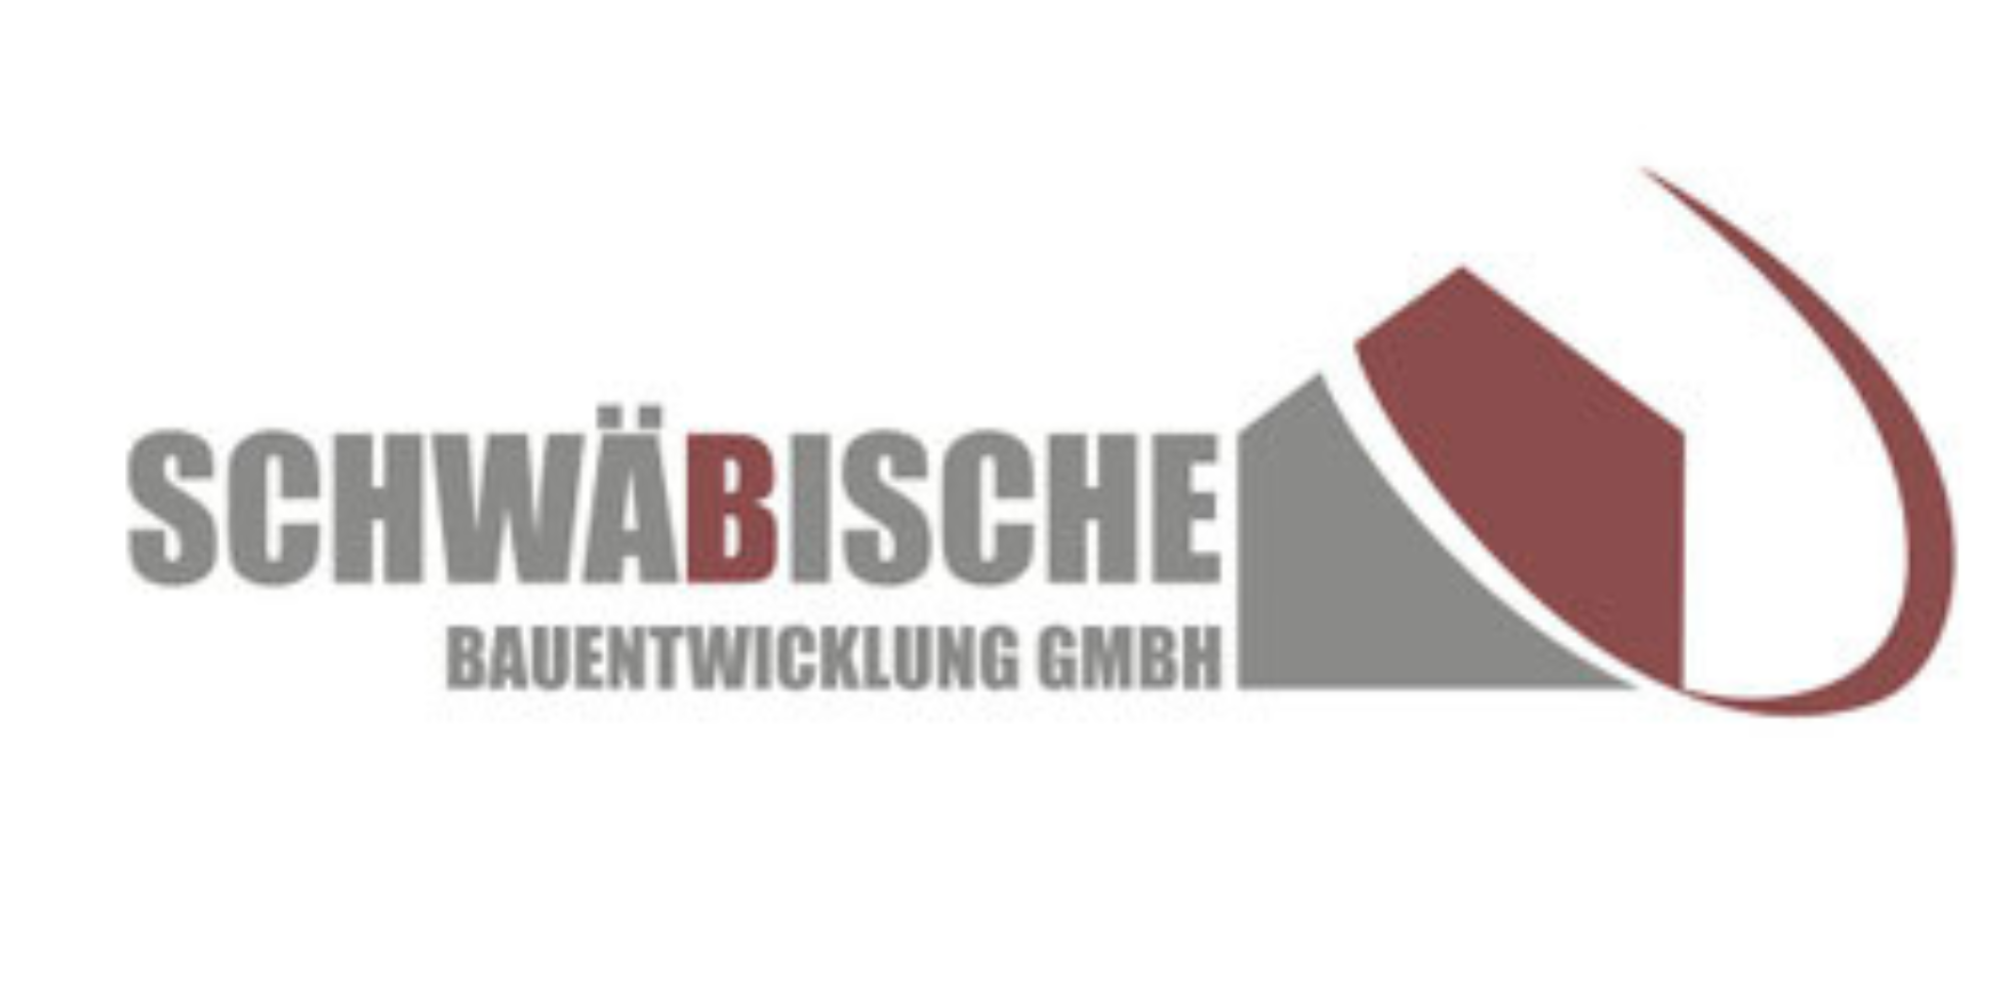 Schwäbische Bauentwicklung GmbH